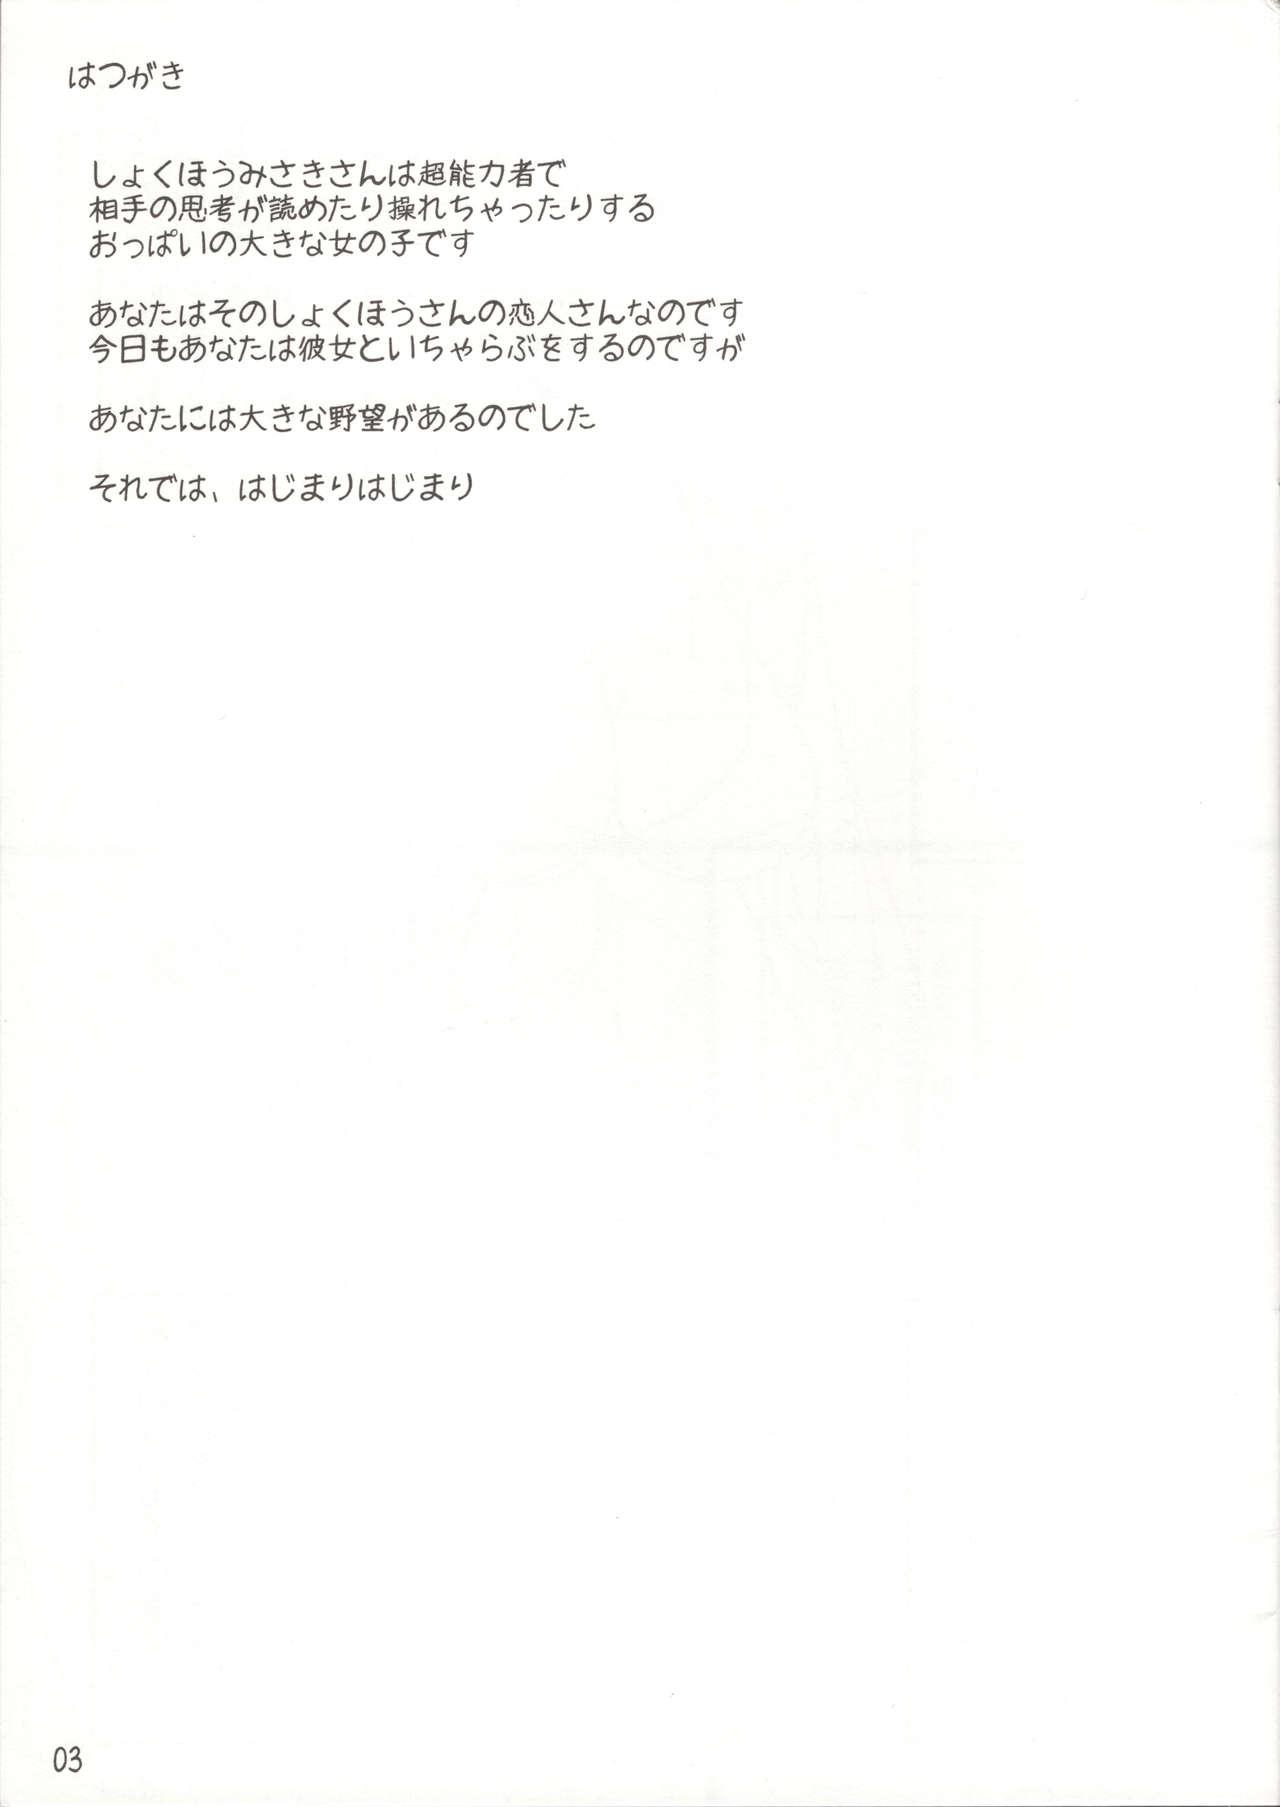 Guys Misaki chito issho! - Toaru kagaku no railgun Punished - Page 2